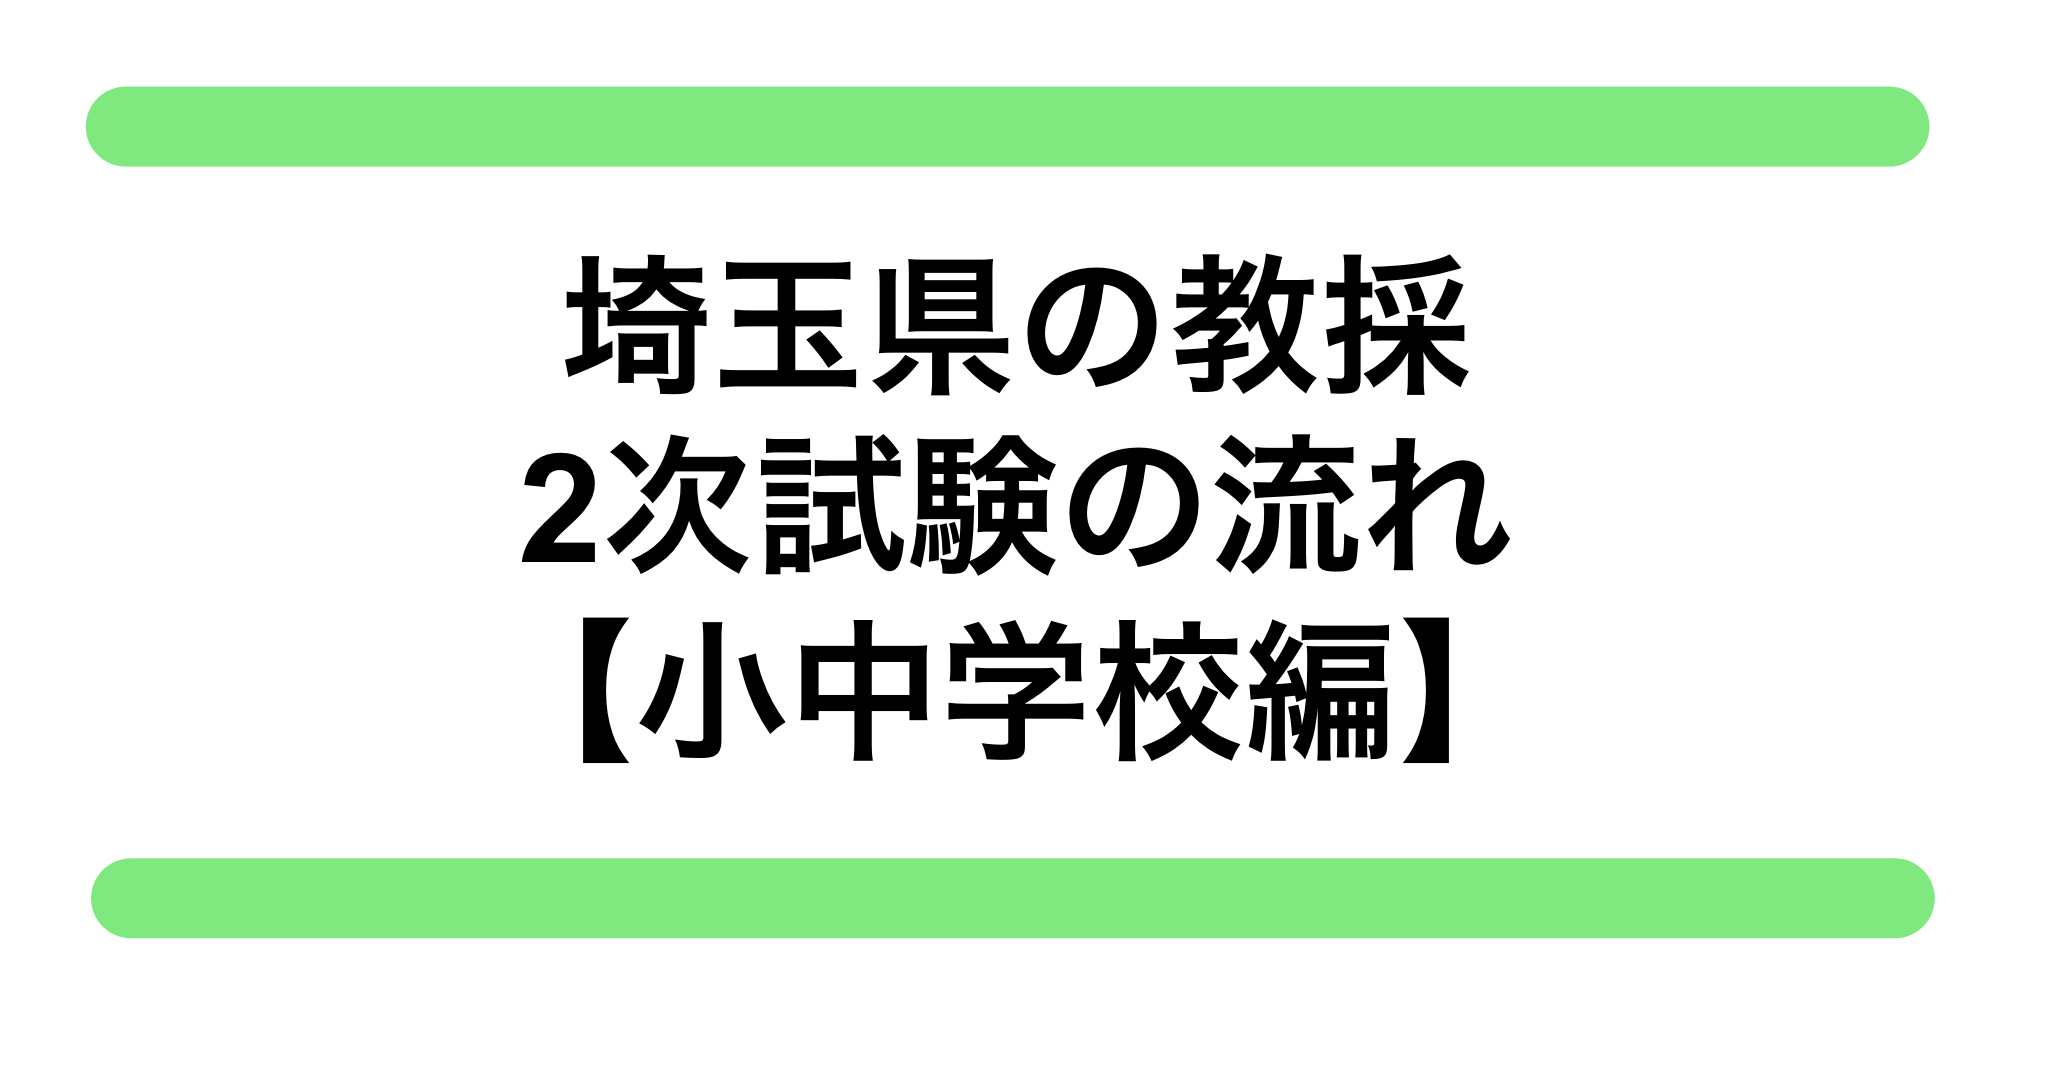 埼玉県の教員採用試験 2次試験 面接の流れ 小中学校編 教員採用試験対策 きょうさい対策ブログ